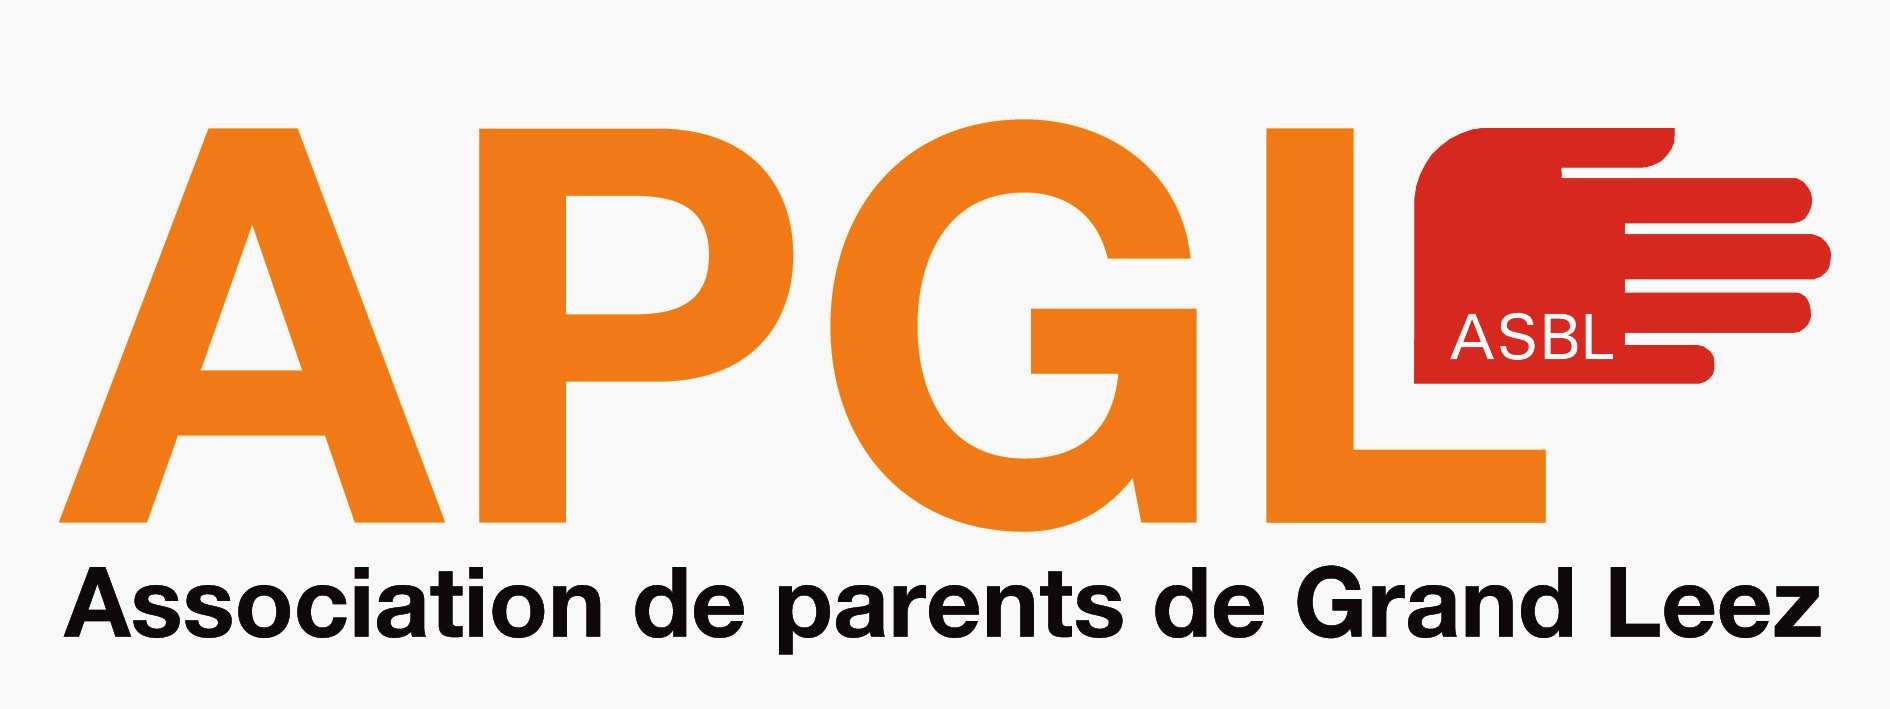 Logo APGL big